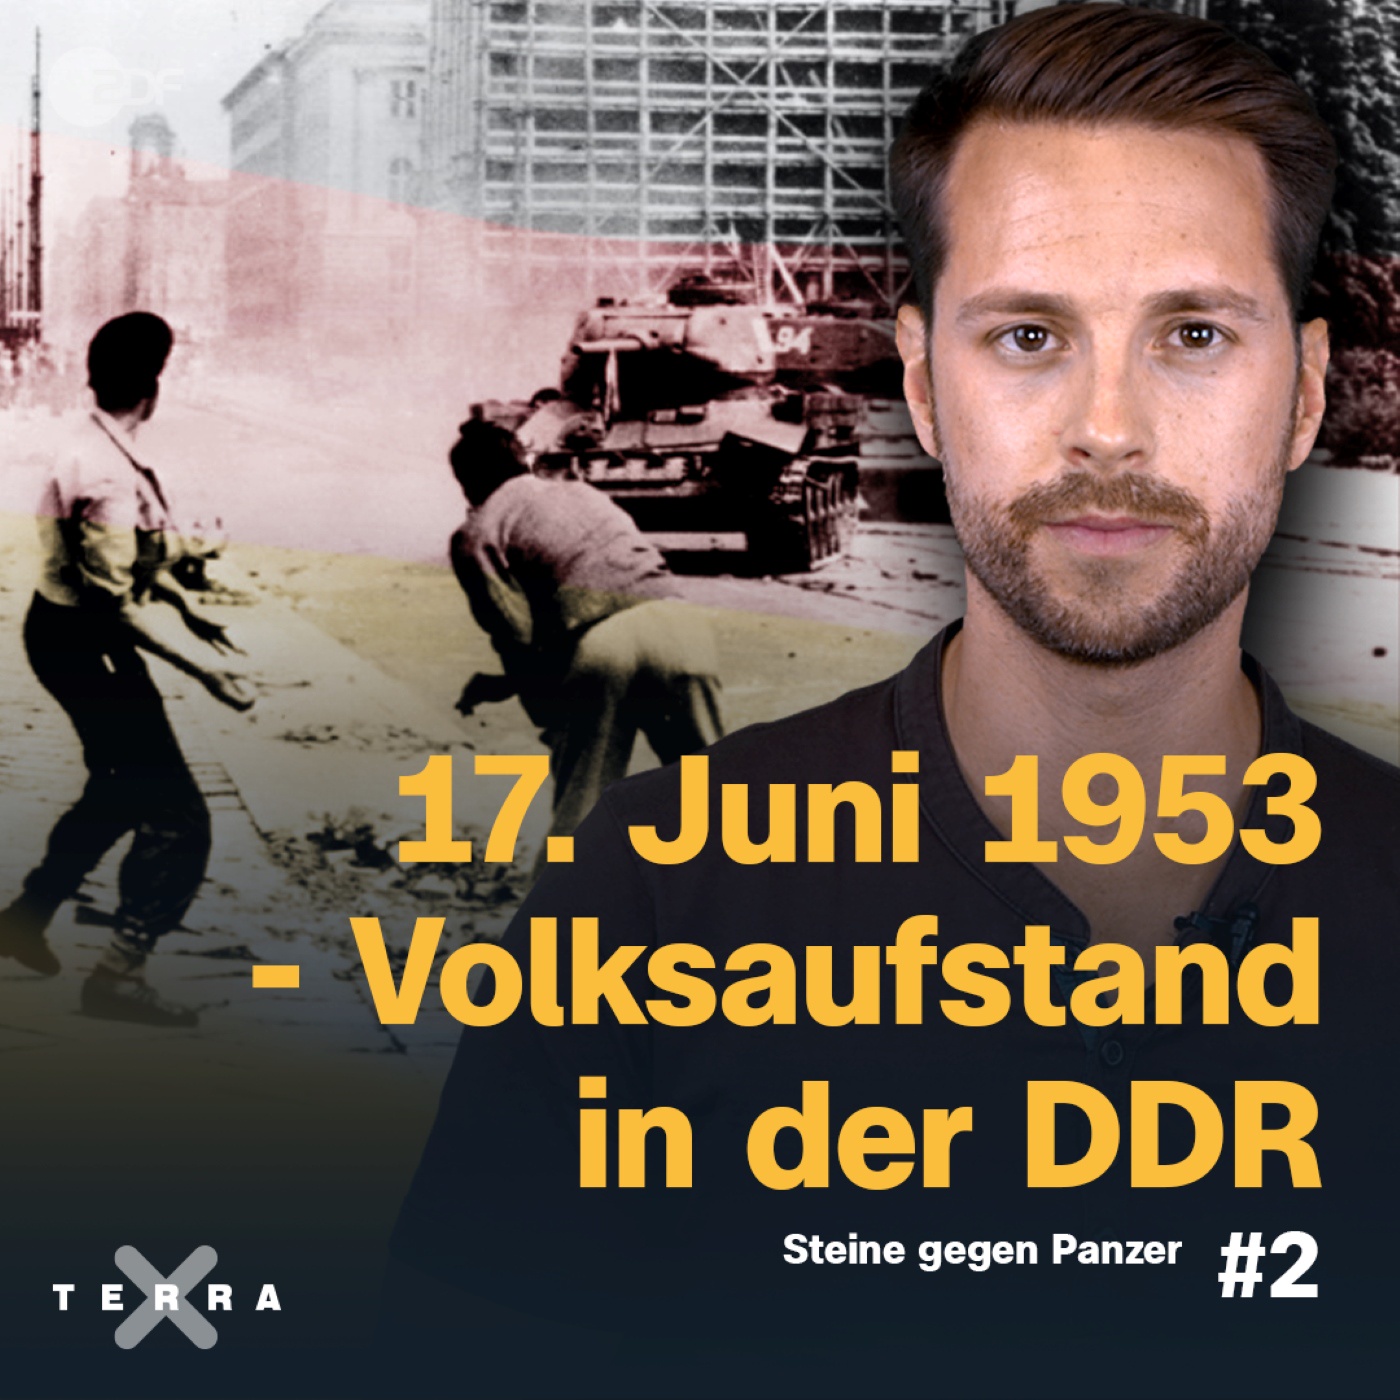 17. Juni 1953 - Volksaufstand in der DDR / #2 Steine gegen Panzer